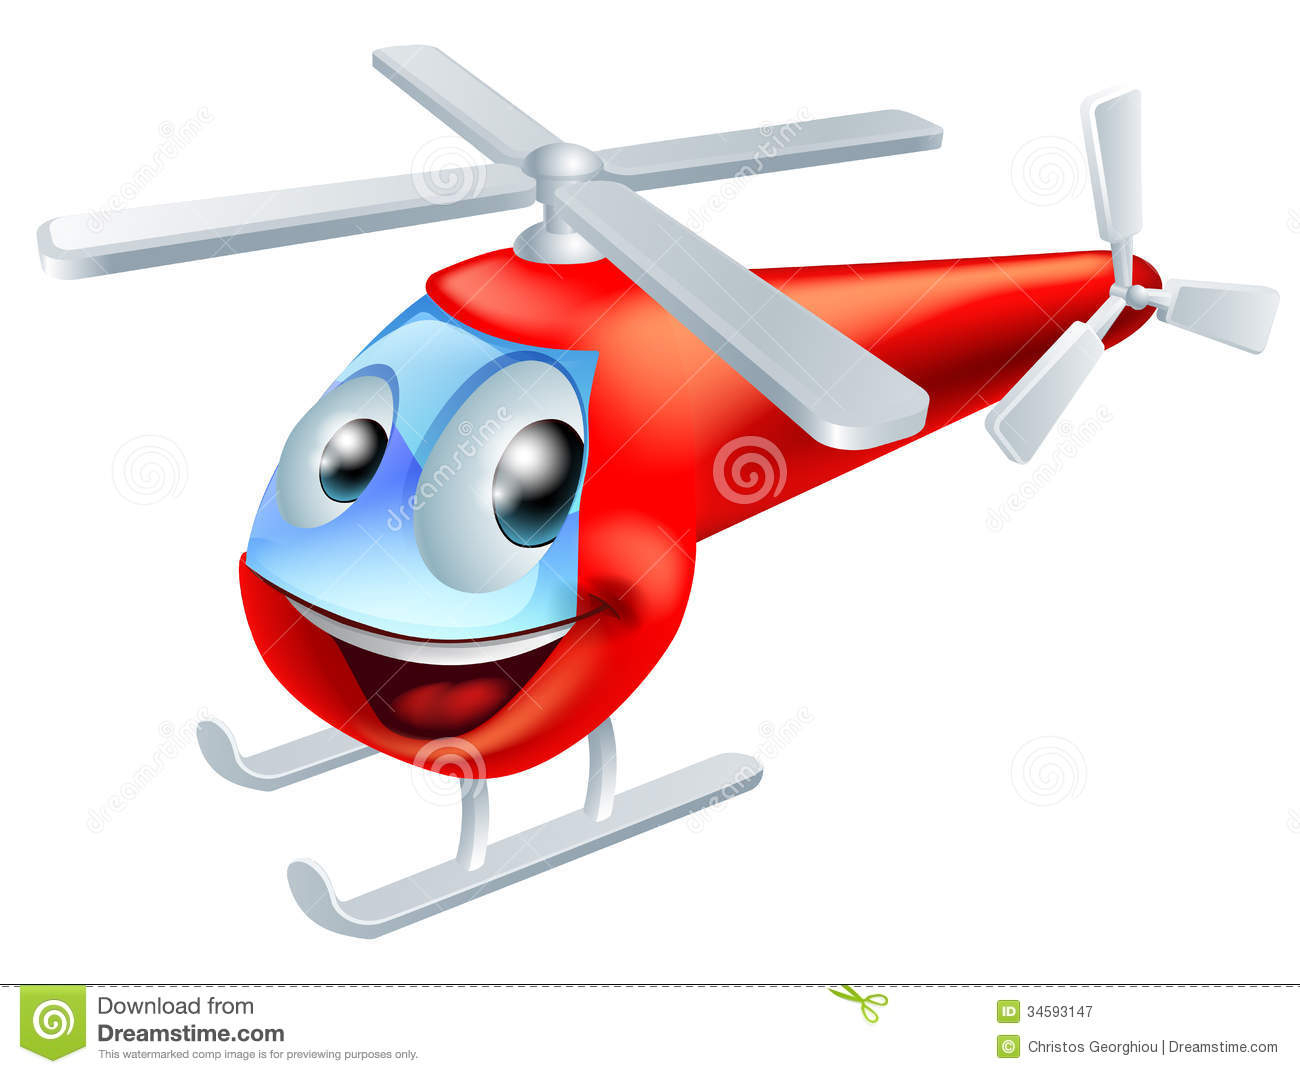 Personnage De Dessin Animé D'Hélicoptère Illustration De à Helicoptere Dessin